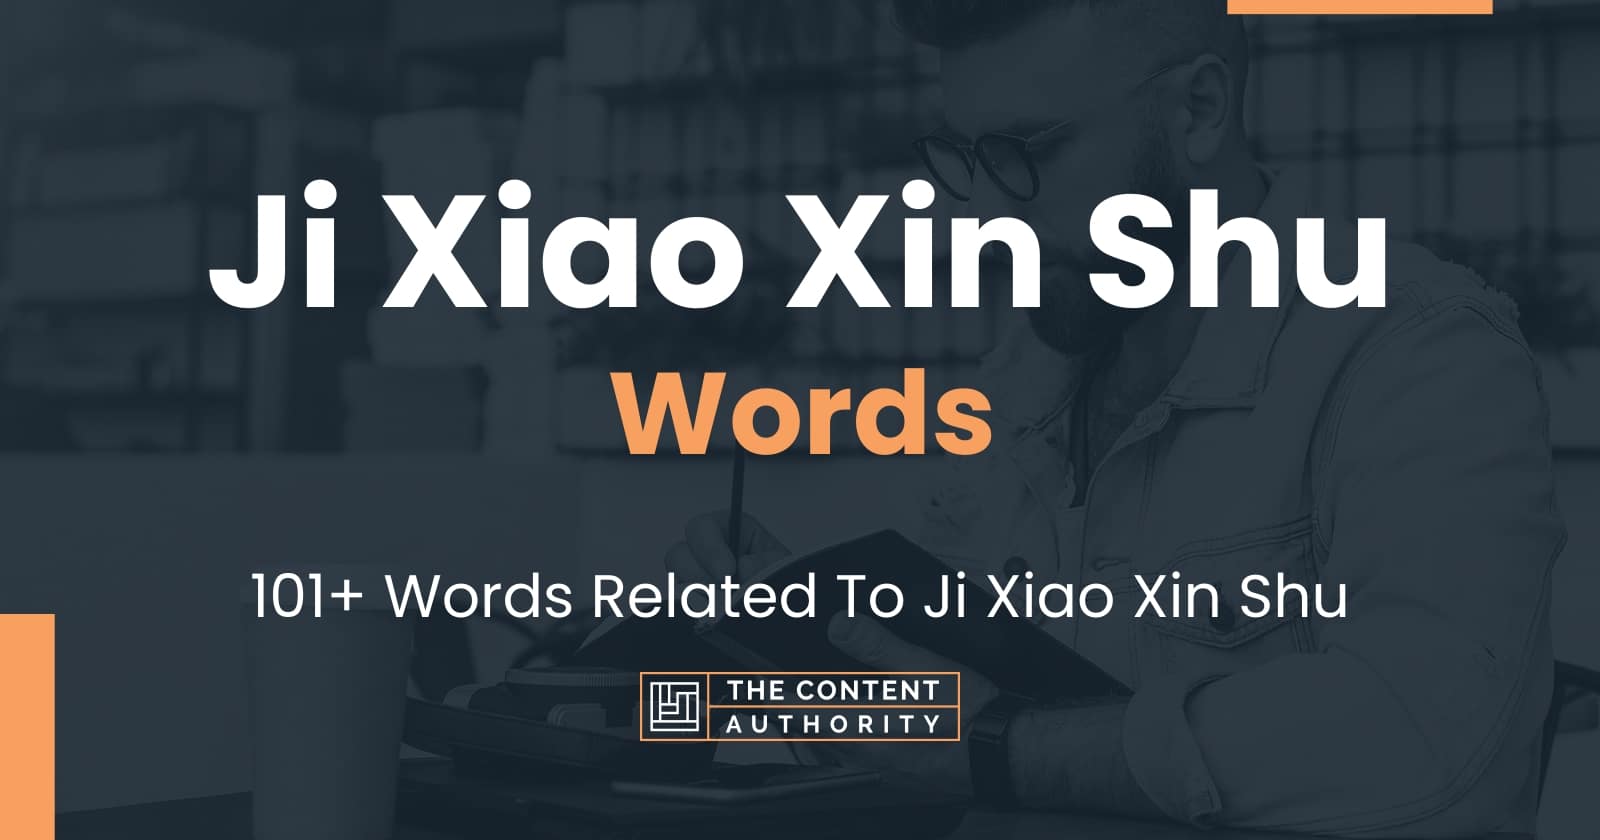 Ji Xiao Xin Shu Words - 101+ Words Related To Ji Xiao Xin Shu